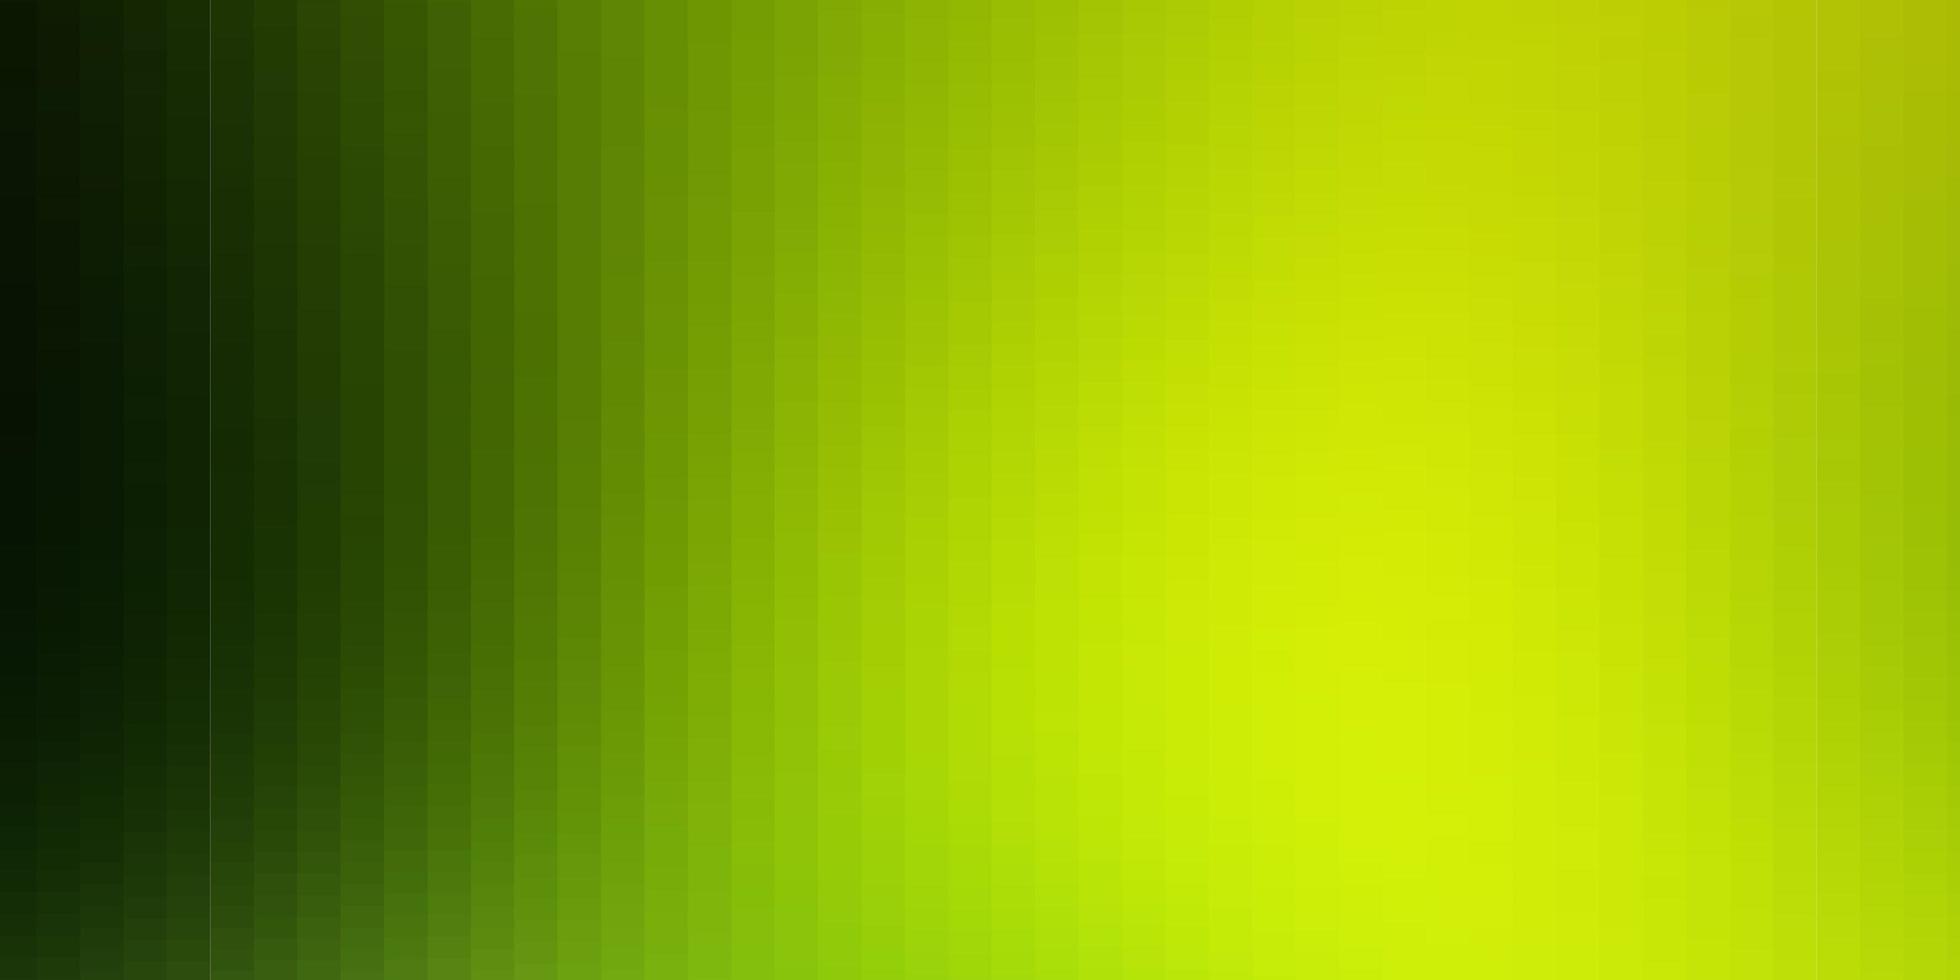 plantilla de vector verde claro, amarillo en rectángulos.